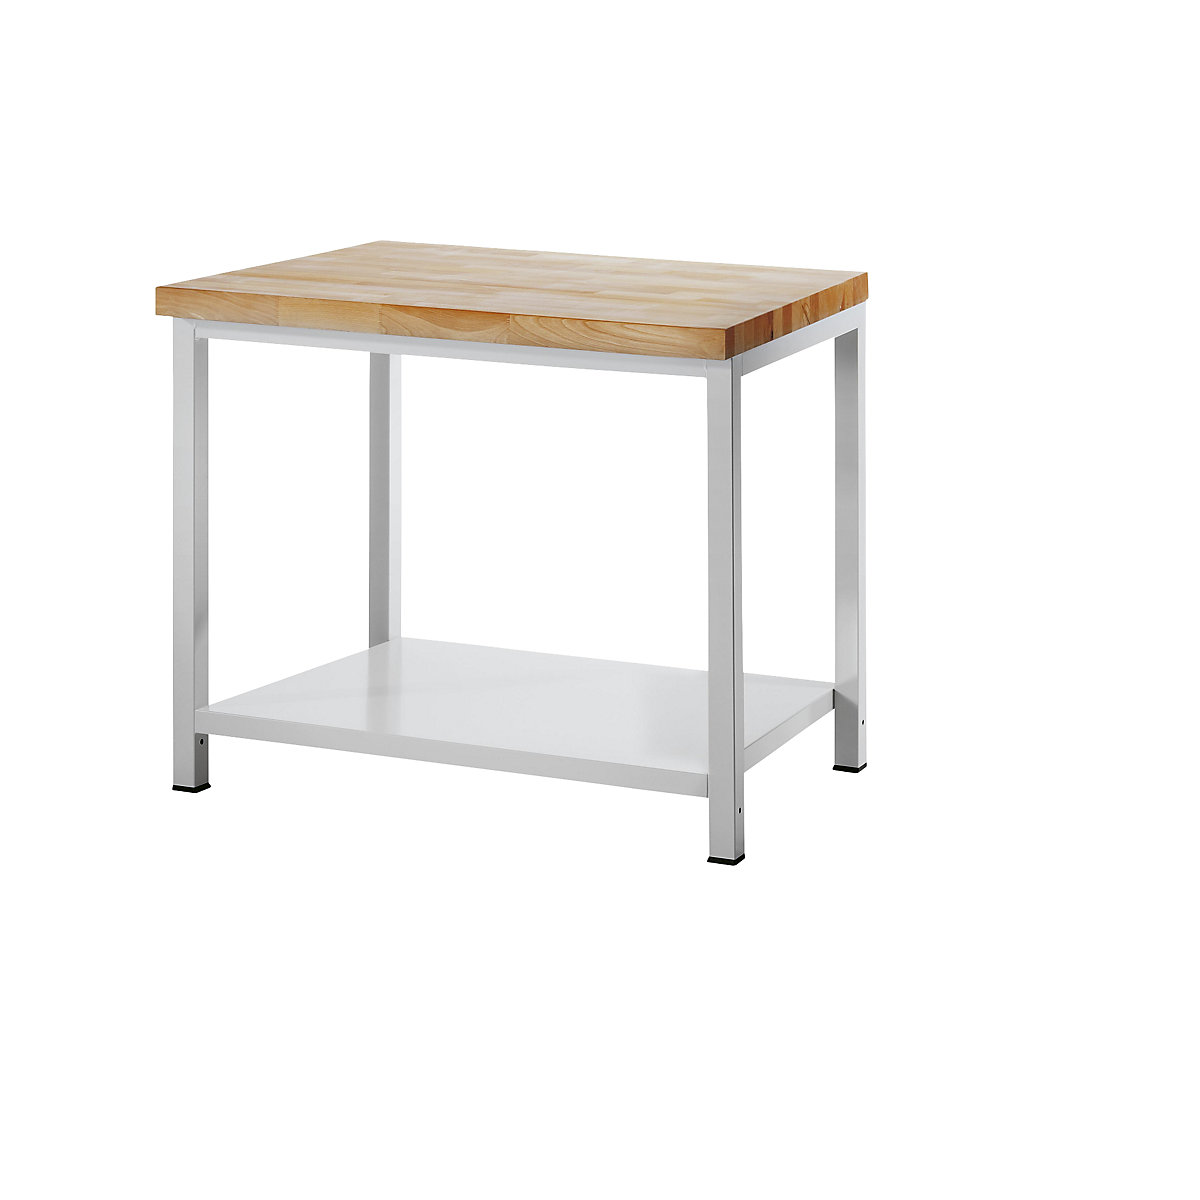 Stół warsztatowy, konstrukcja ramowa – RAU (Zdjęcie produktu 7)-6